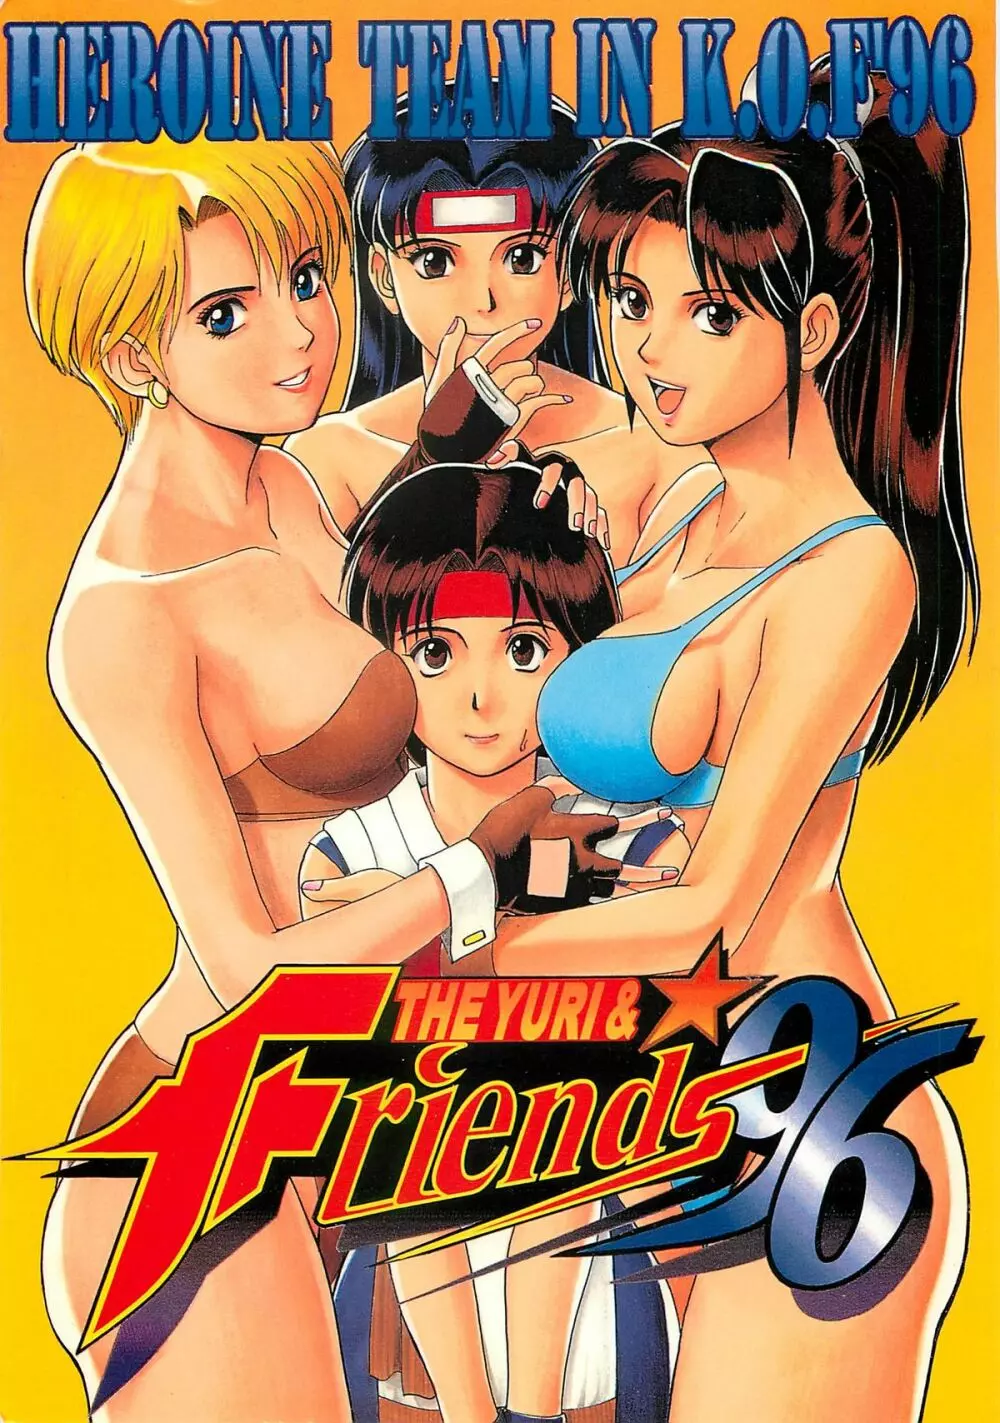 The Yuri&Friends '96